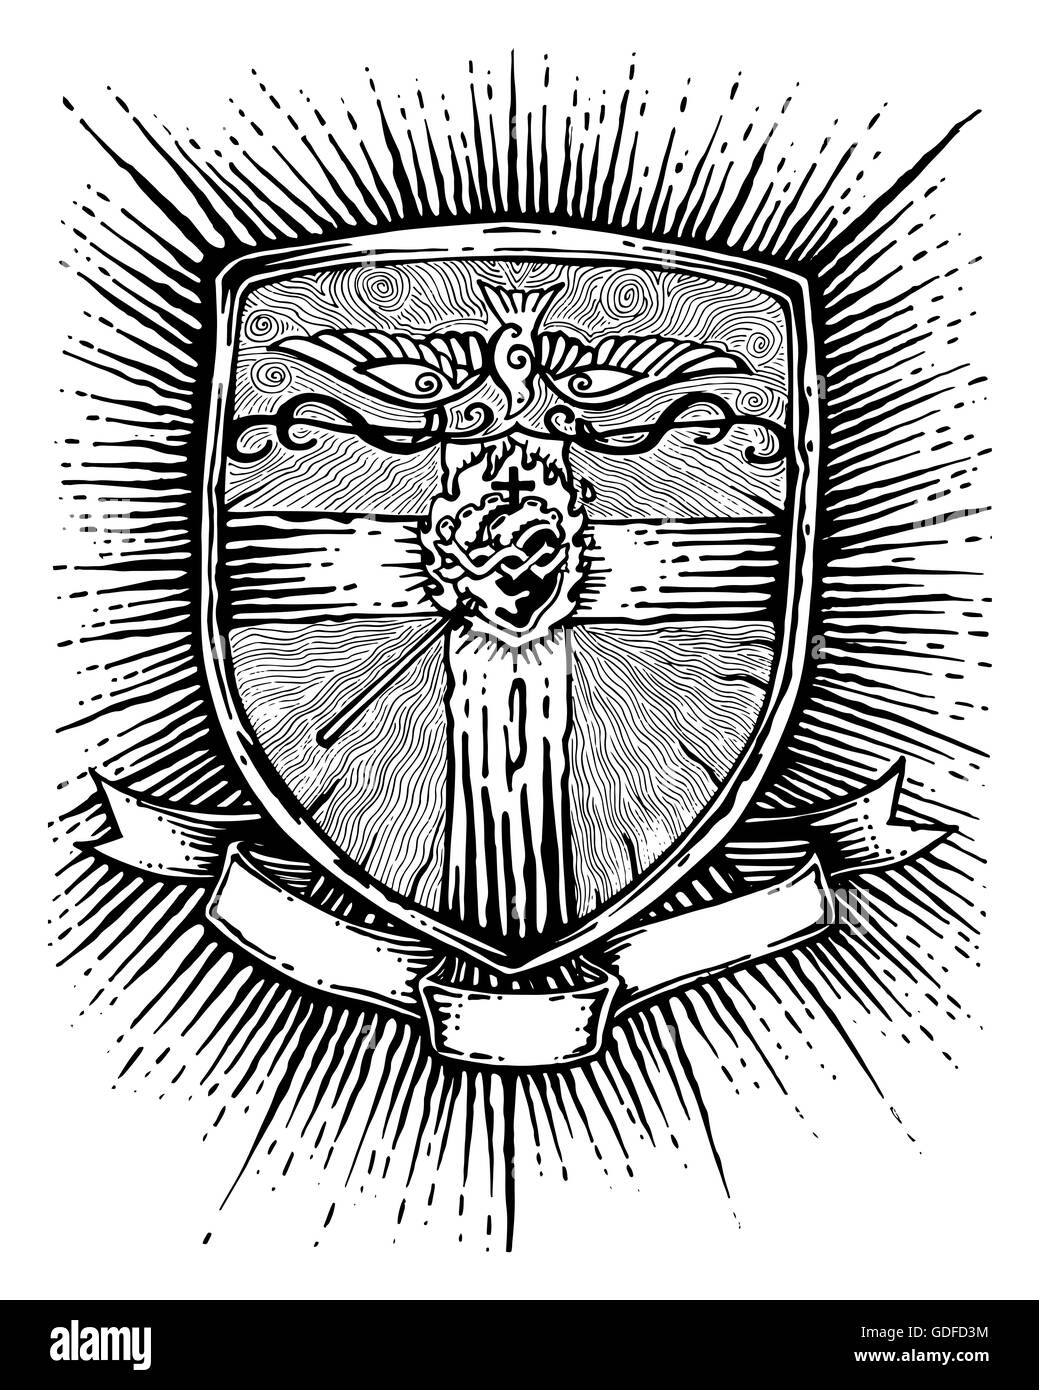 Disegnata a mano immagine o disegno di un badge con una croce religiosa, cuore, colomba e un nastro per il testo Foto Stock